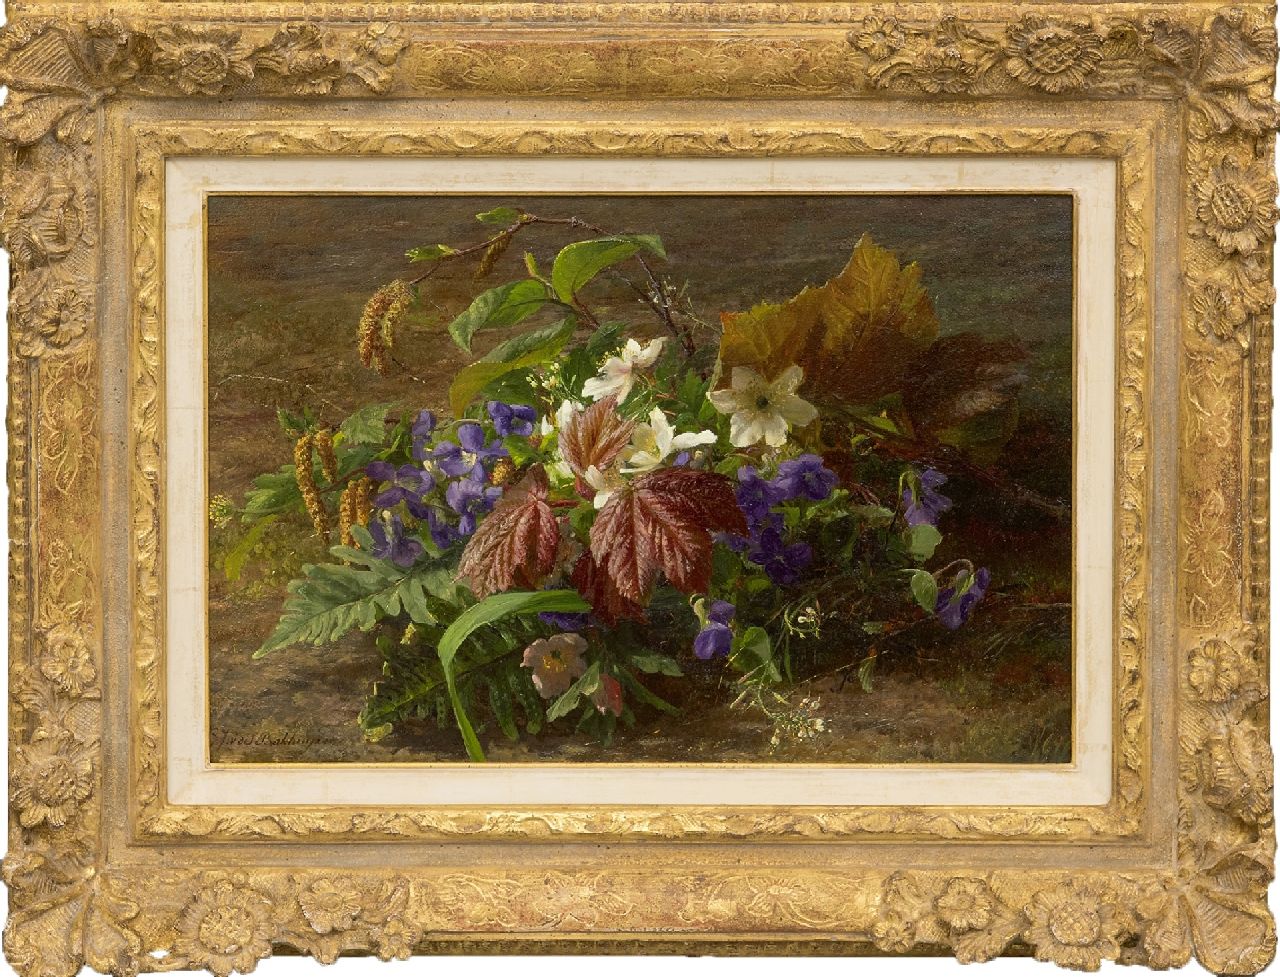 Sande Bakhuyzen G.J. van de | 'Gerardine' Jacoba van de Sande Bakhuyzen, An autumn bouquet with violets on a forest floor, oil on panel 24.8 x 36.6 cm, signed l.l.